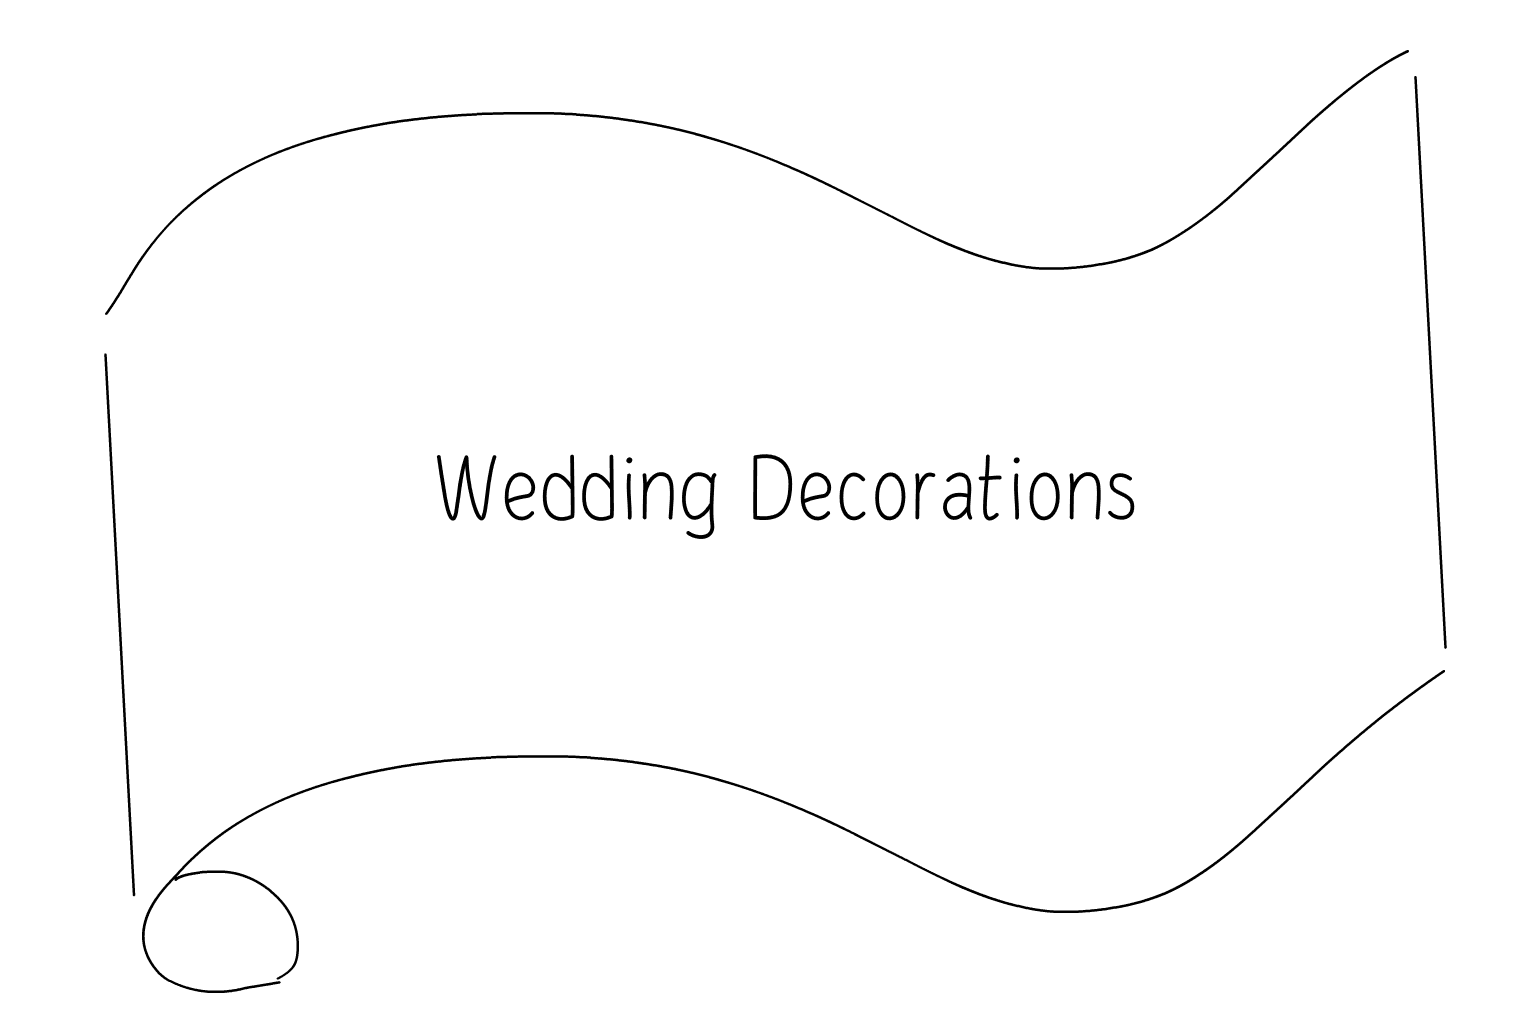 Ilustrace svatebních dekorací